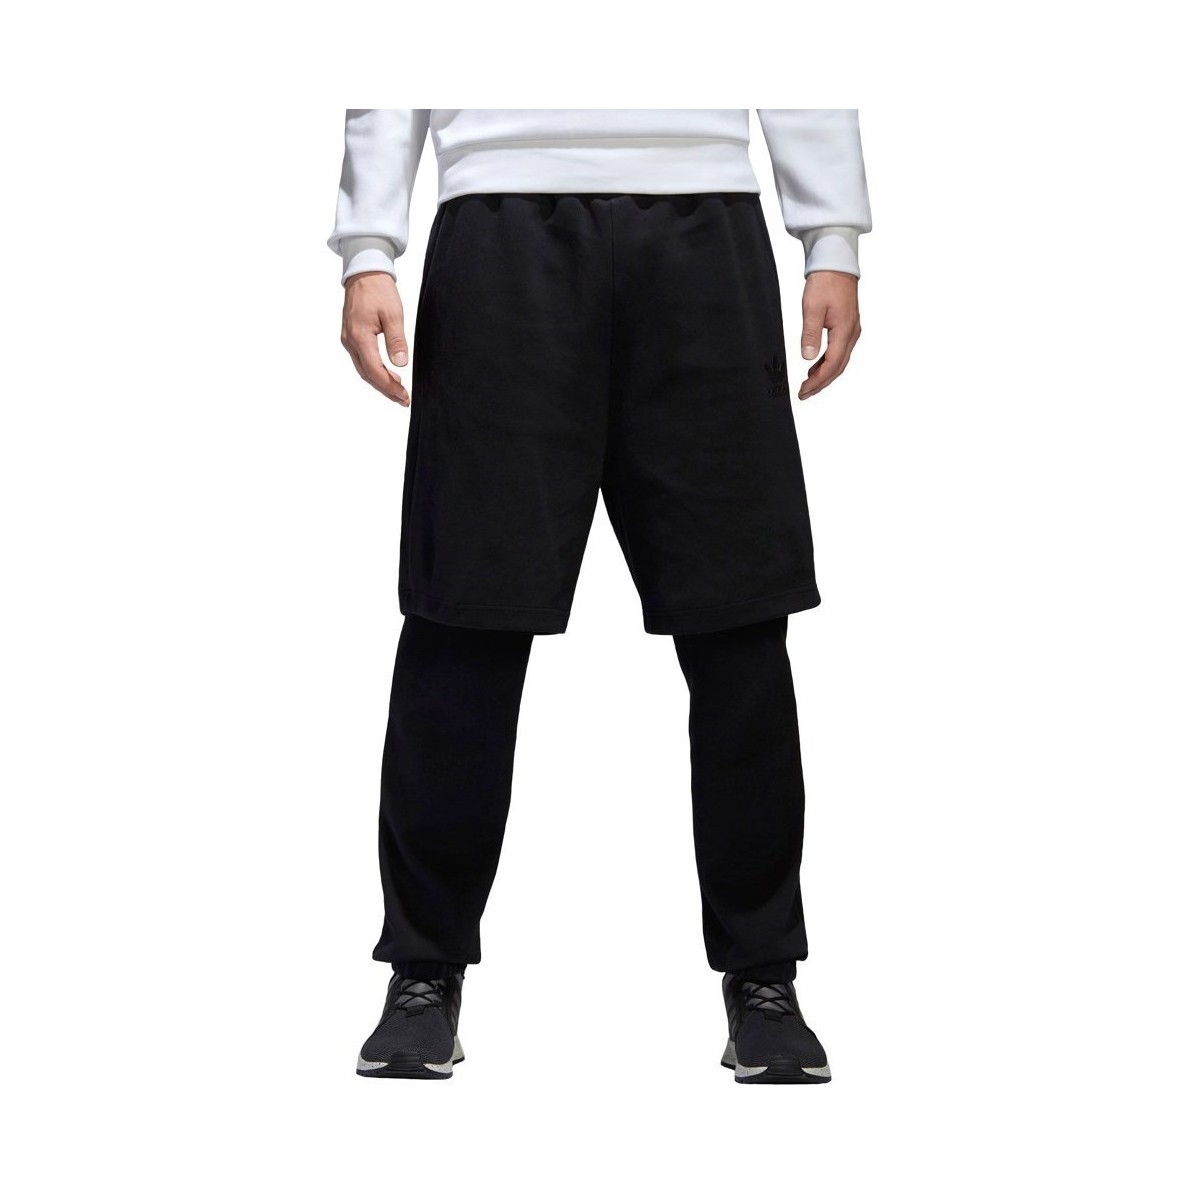 Îmbracaminte Bărbați Pantaloni  adidas Originals Winter Sweat Pants Negru